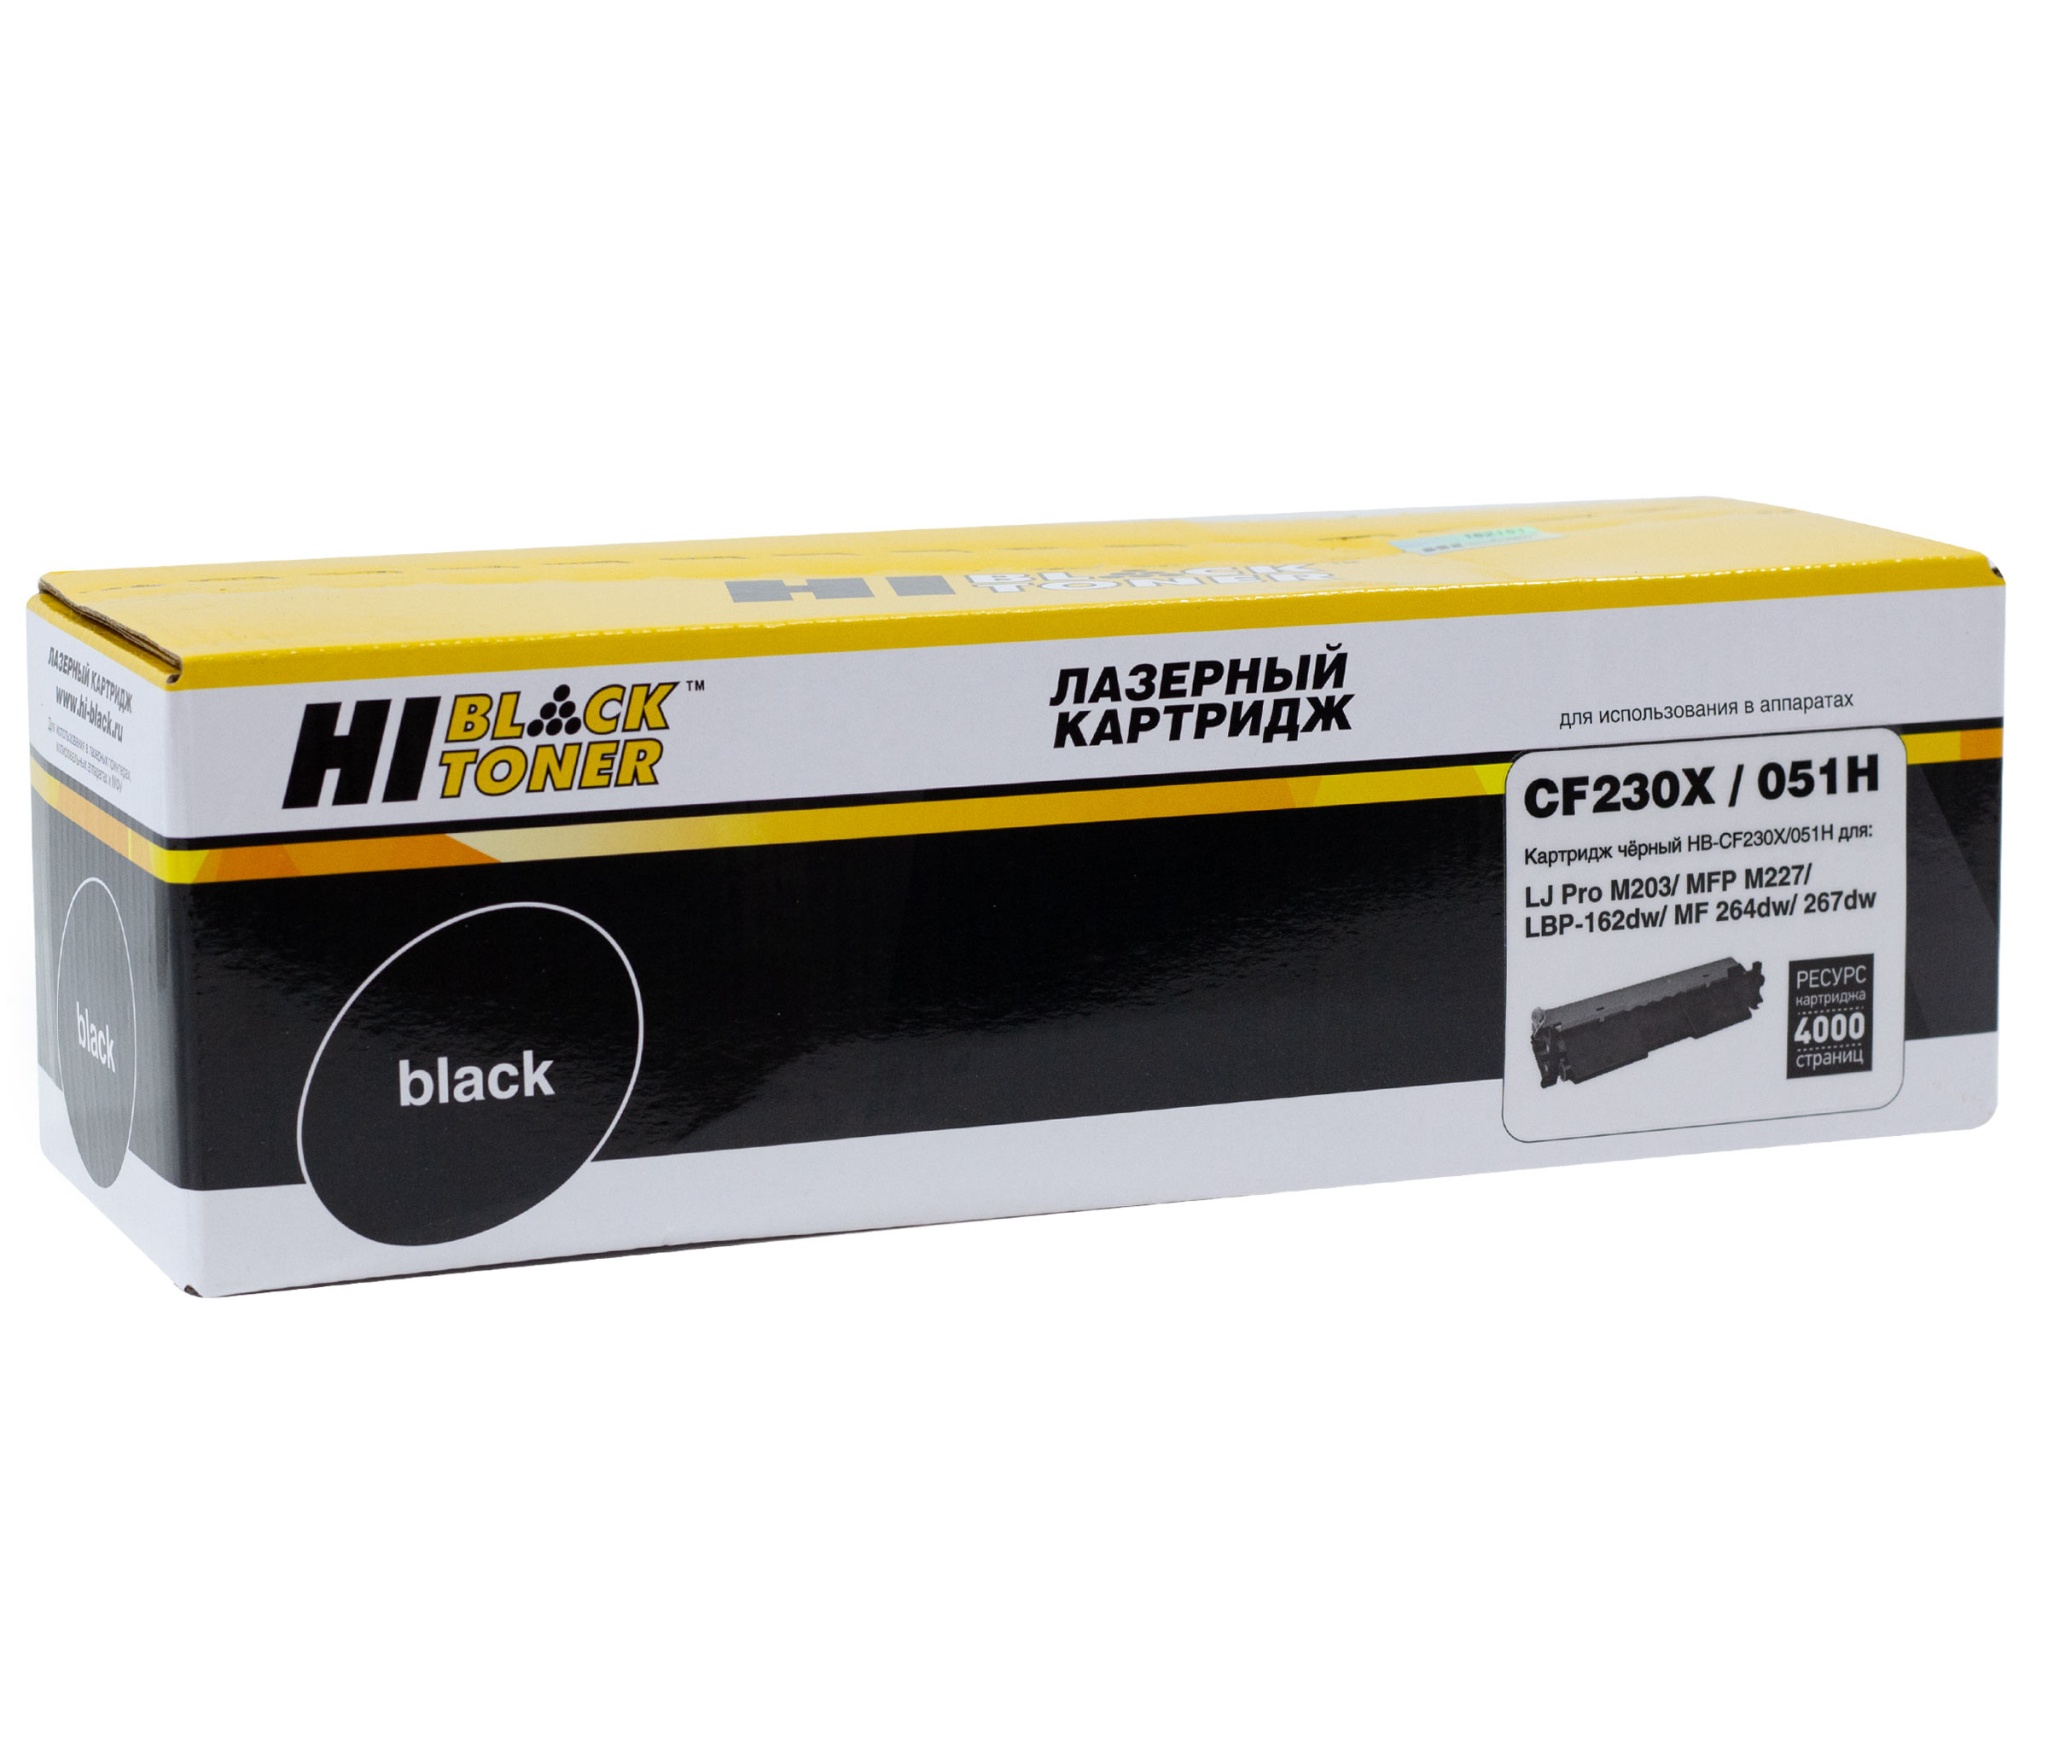 Тонер-картридж Hi-Black (HB-CF230X/ 051H) для HP LJ Pro M203/ MFP M227/ LBP-162dw/ MF-264dw/ 267dw, чёрный (4000 стр.)